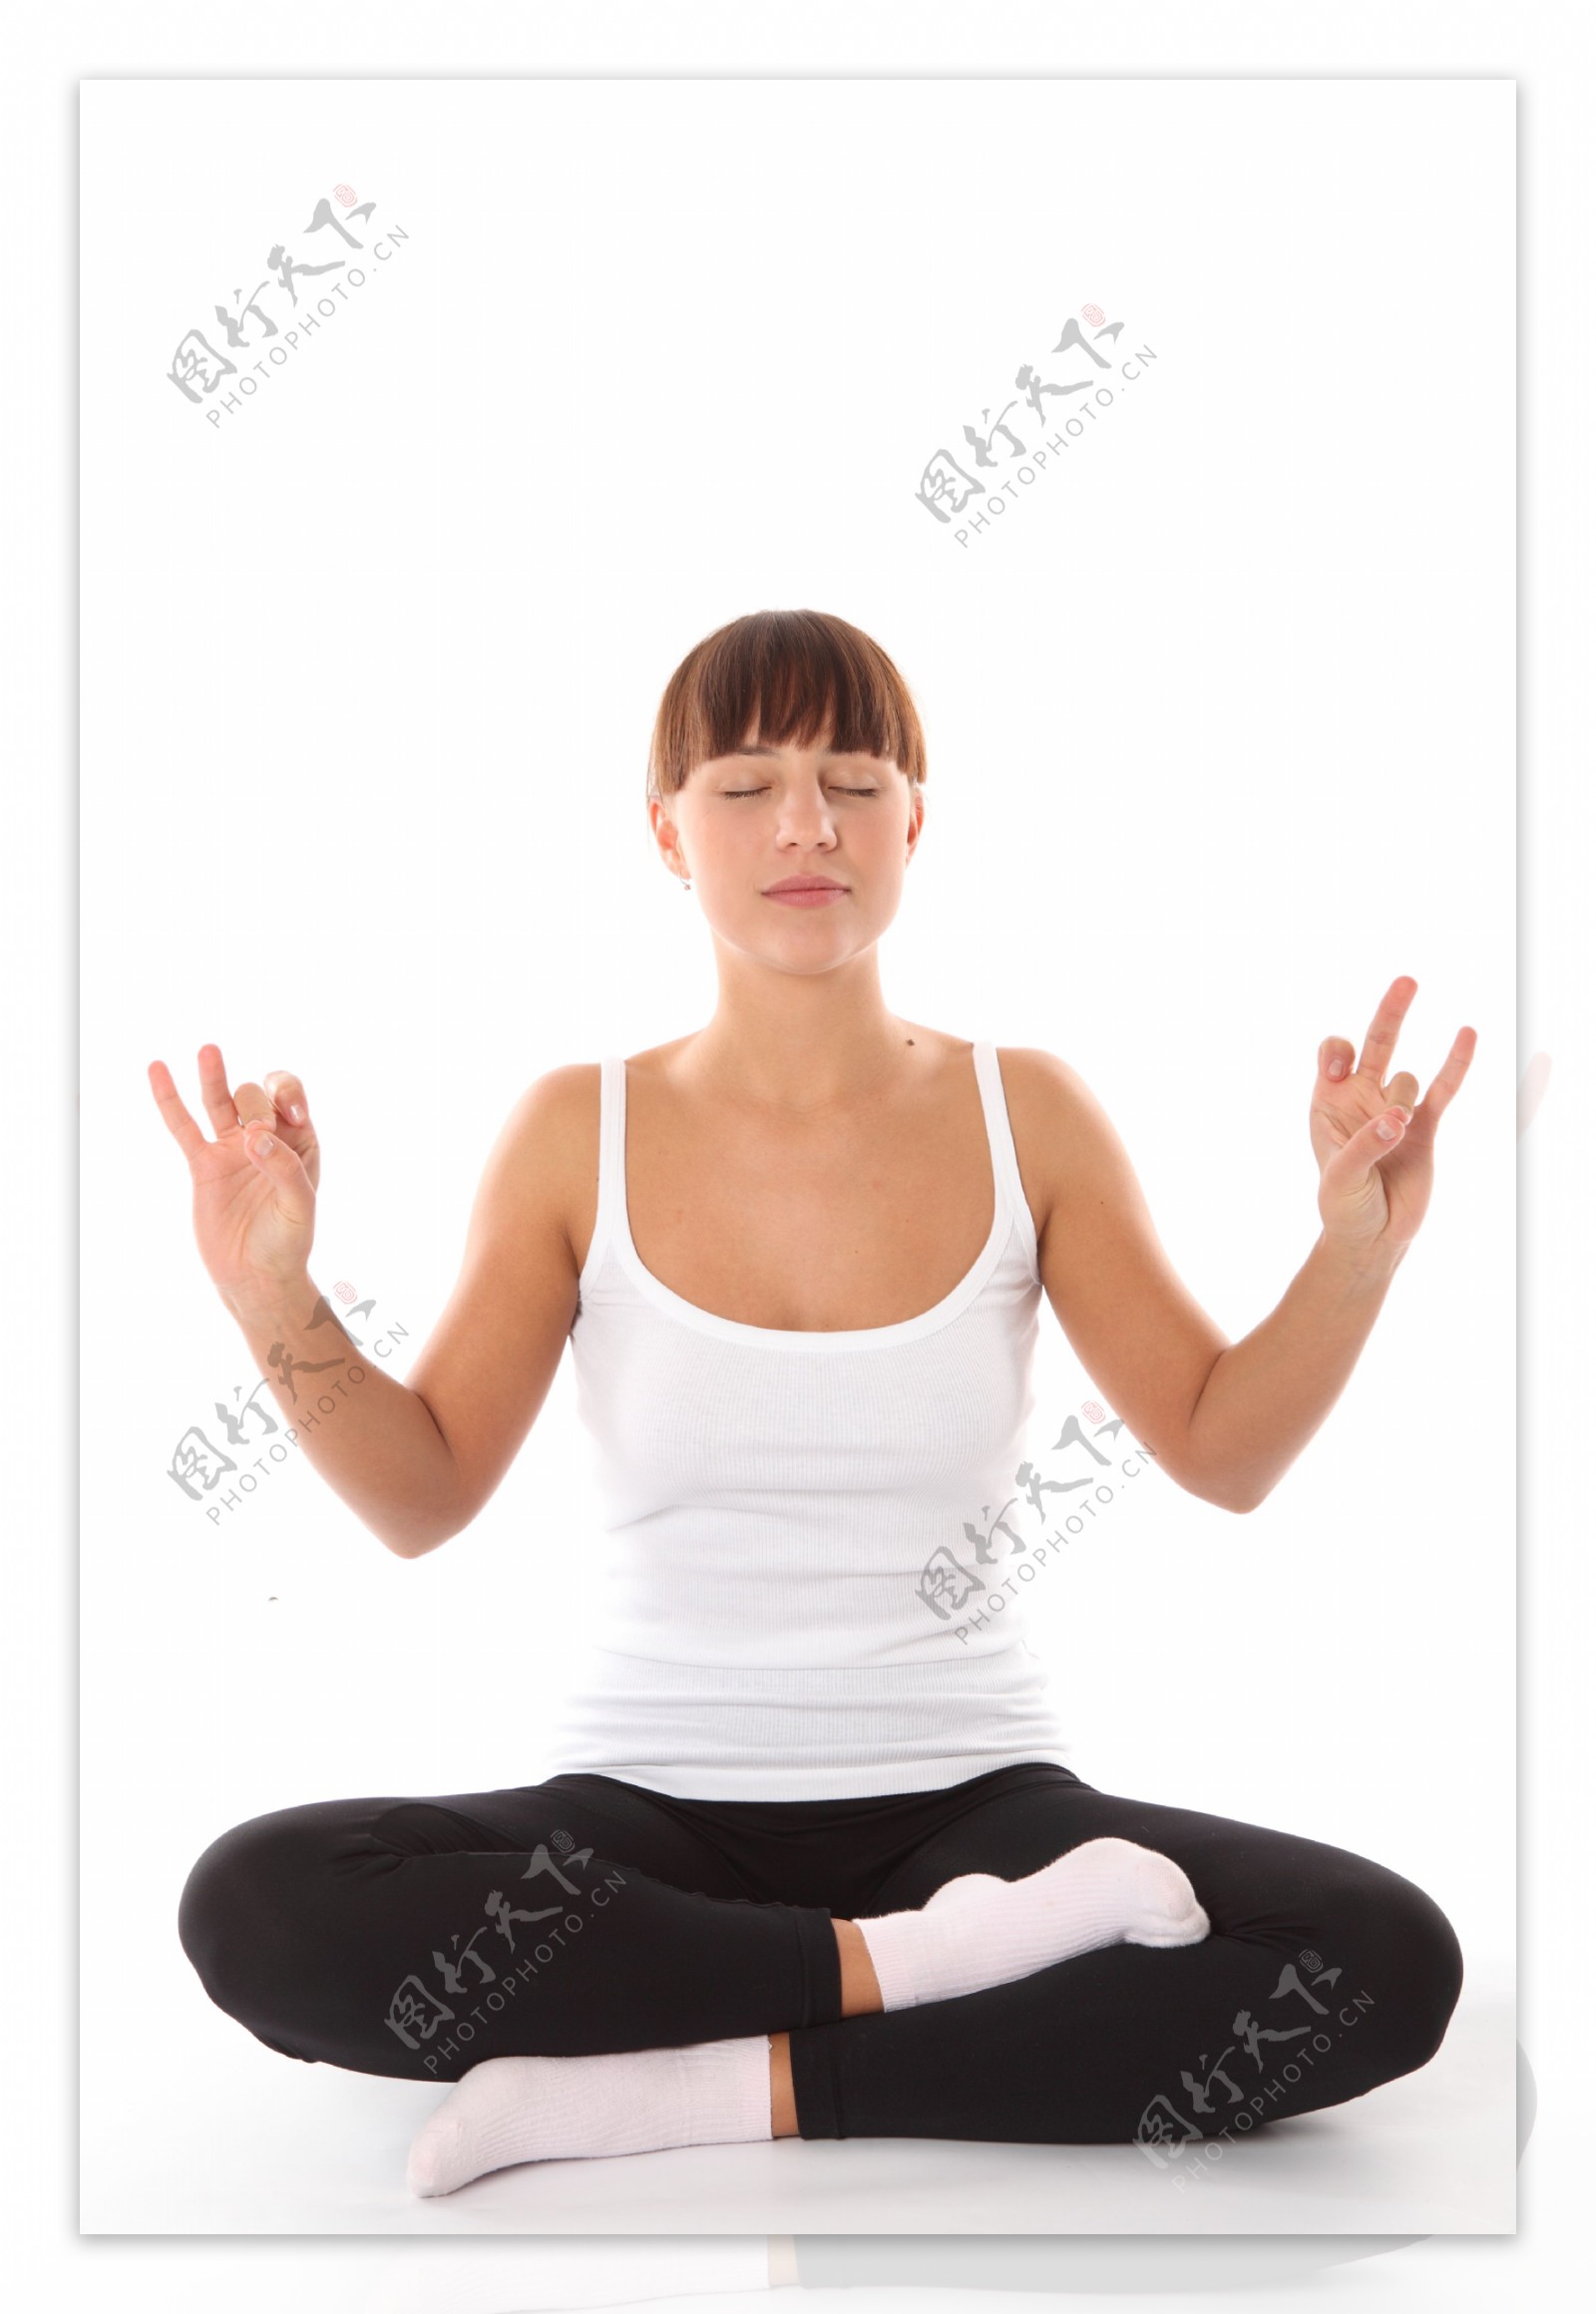 练瑜珈的女人图片